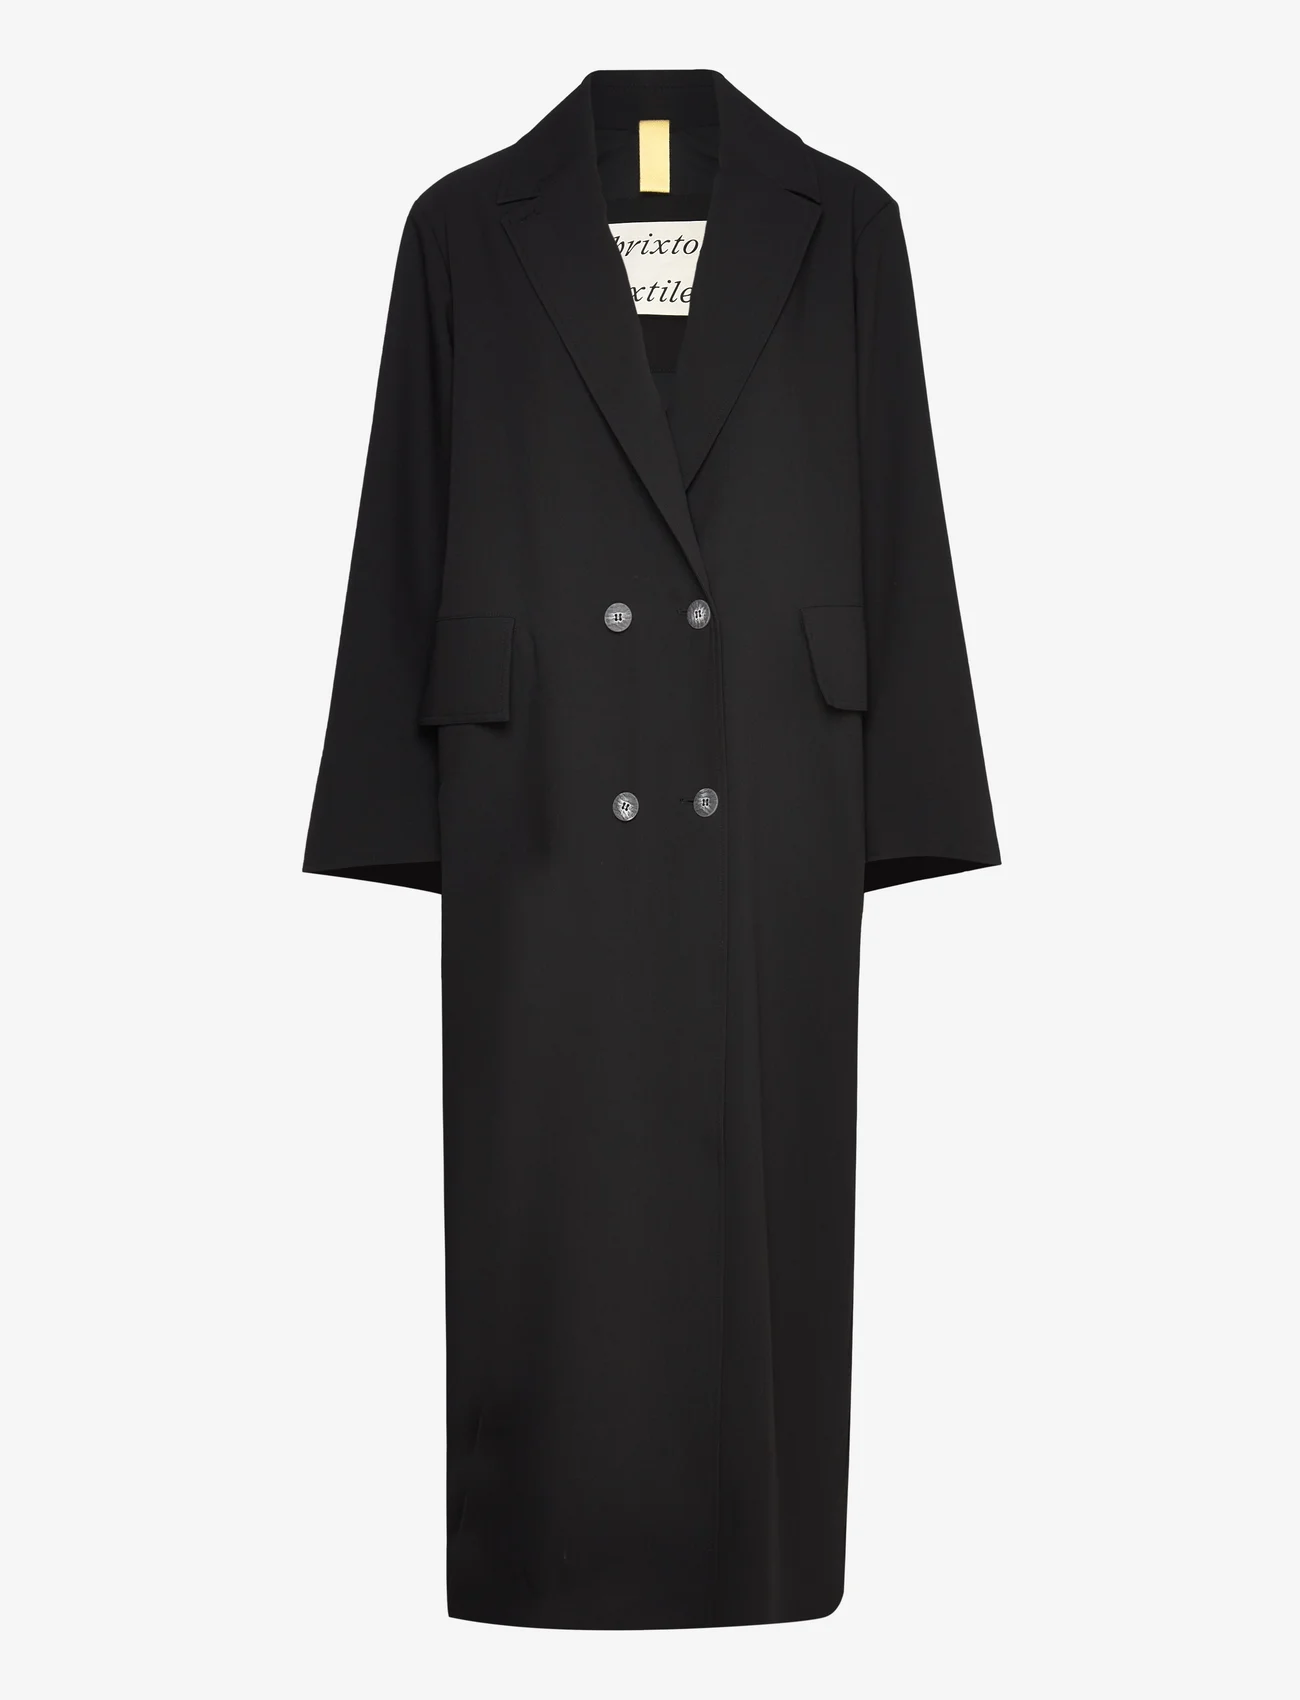 Brixtol Textiles - Olivia - Polyester coat - talvitakit - black - 0